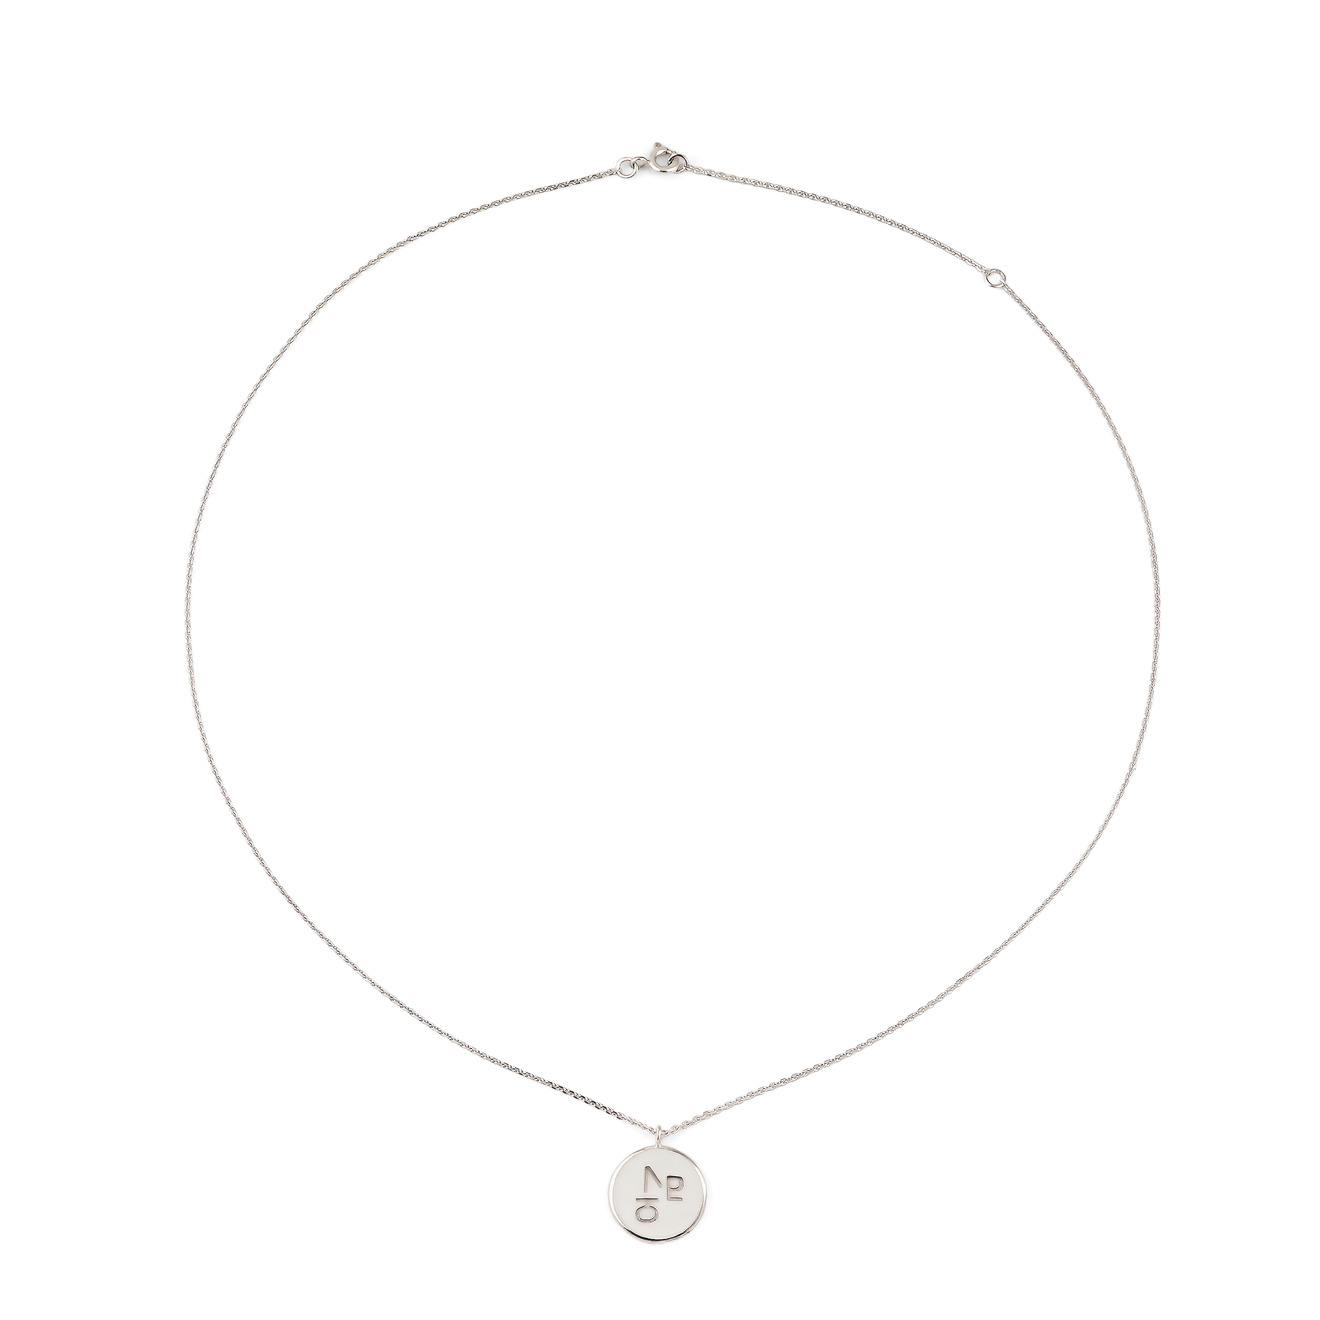 Arha jewelry медальон из серебра бесконечное люблю с белой эмалью